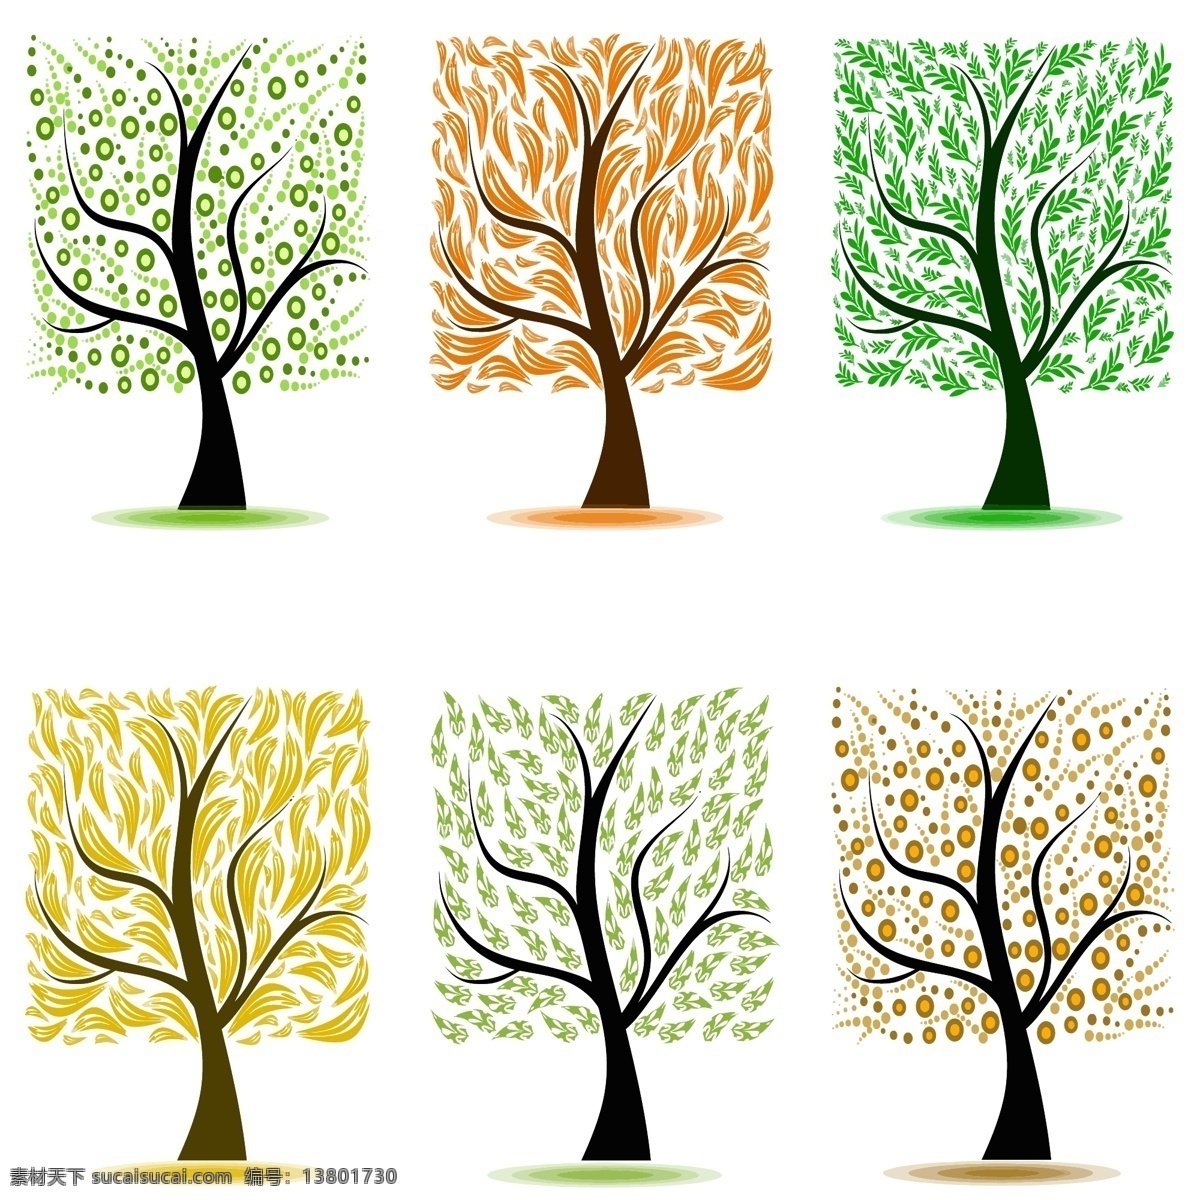 彩色 树 矢量 元素 logo 卡通树 面包树 矢量元素 图标